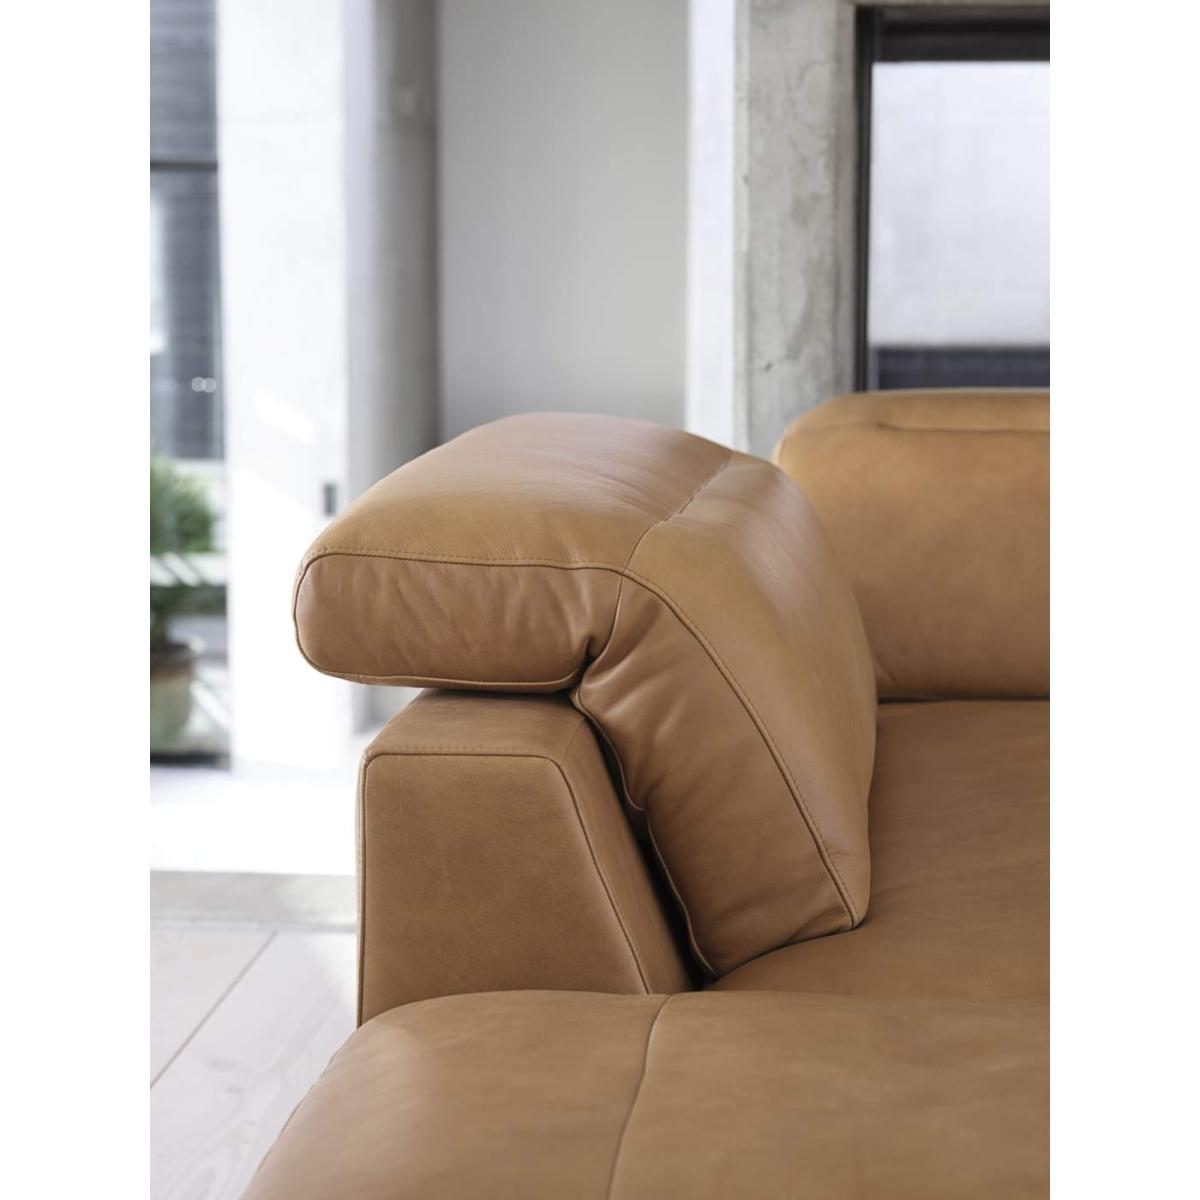 Italian Leather Tan 3 Seater Sofa, Sofa Hire